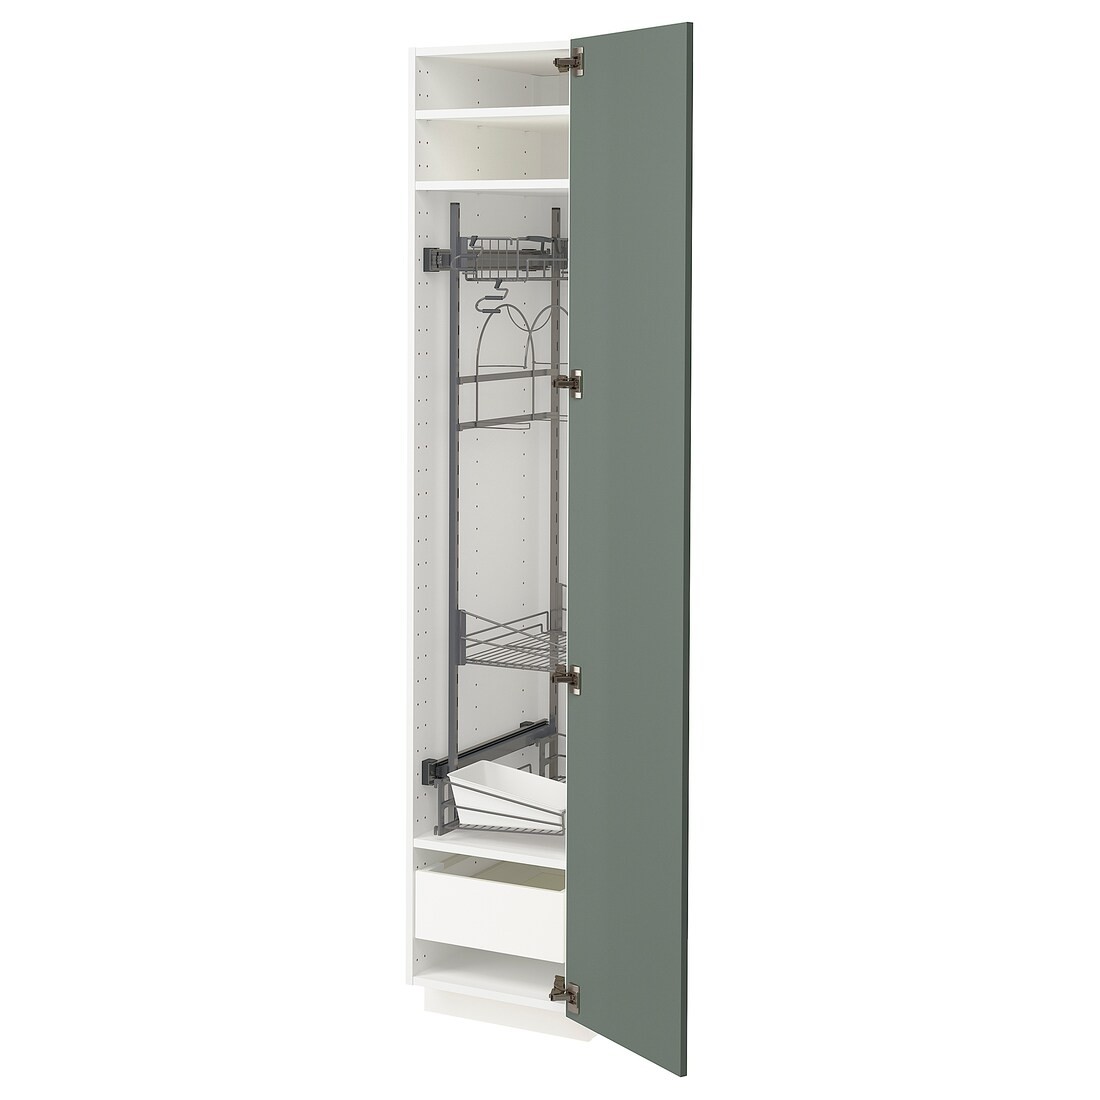 METOD МЕТОД / MAXIMERA МАКСИМЕРА Высокий шкаф с отделением для аксессуаров для уборки, белый / Bodarp серо-зеленый, 40x60x200 см